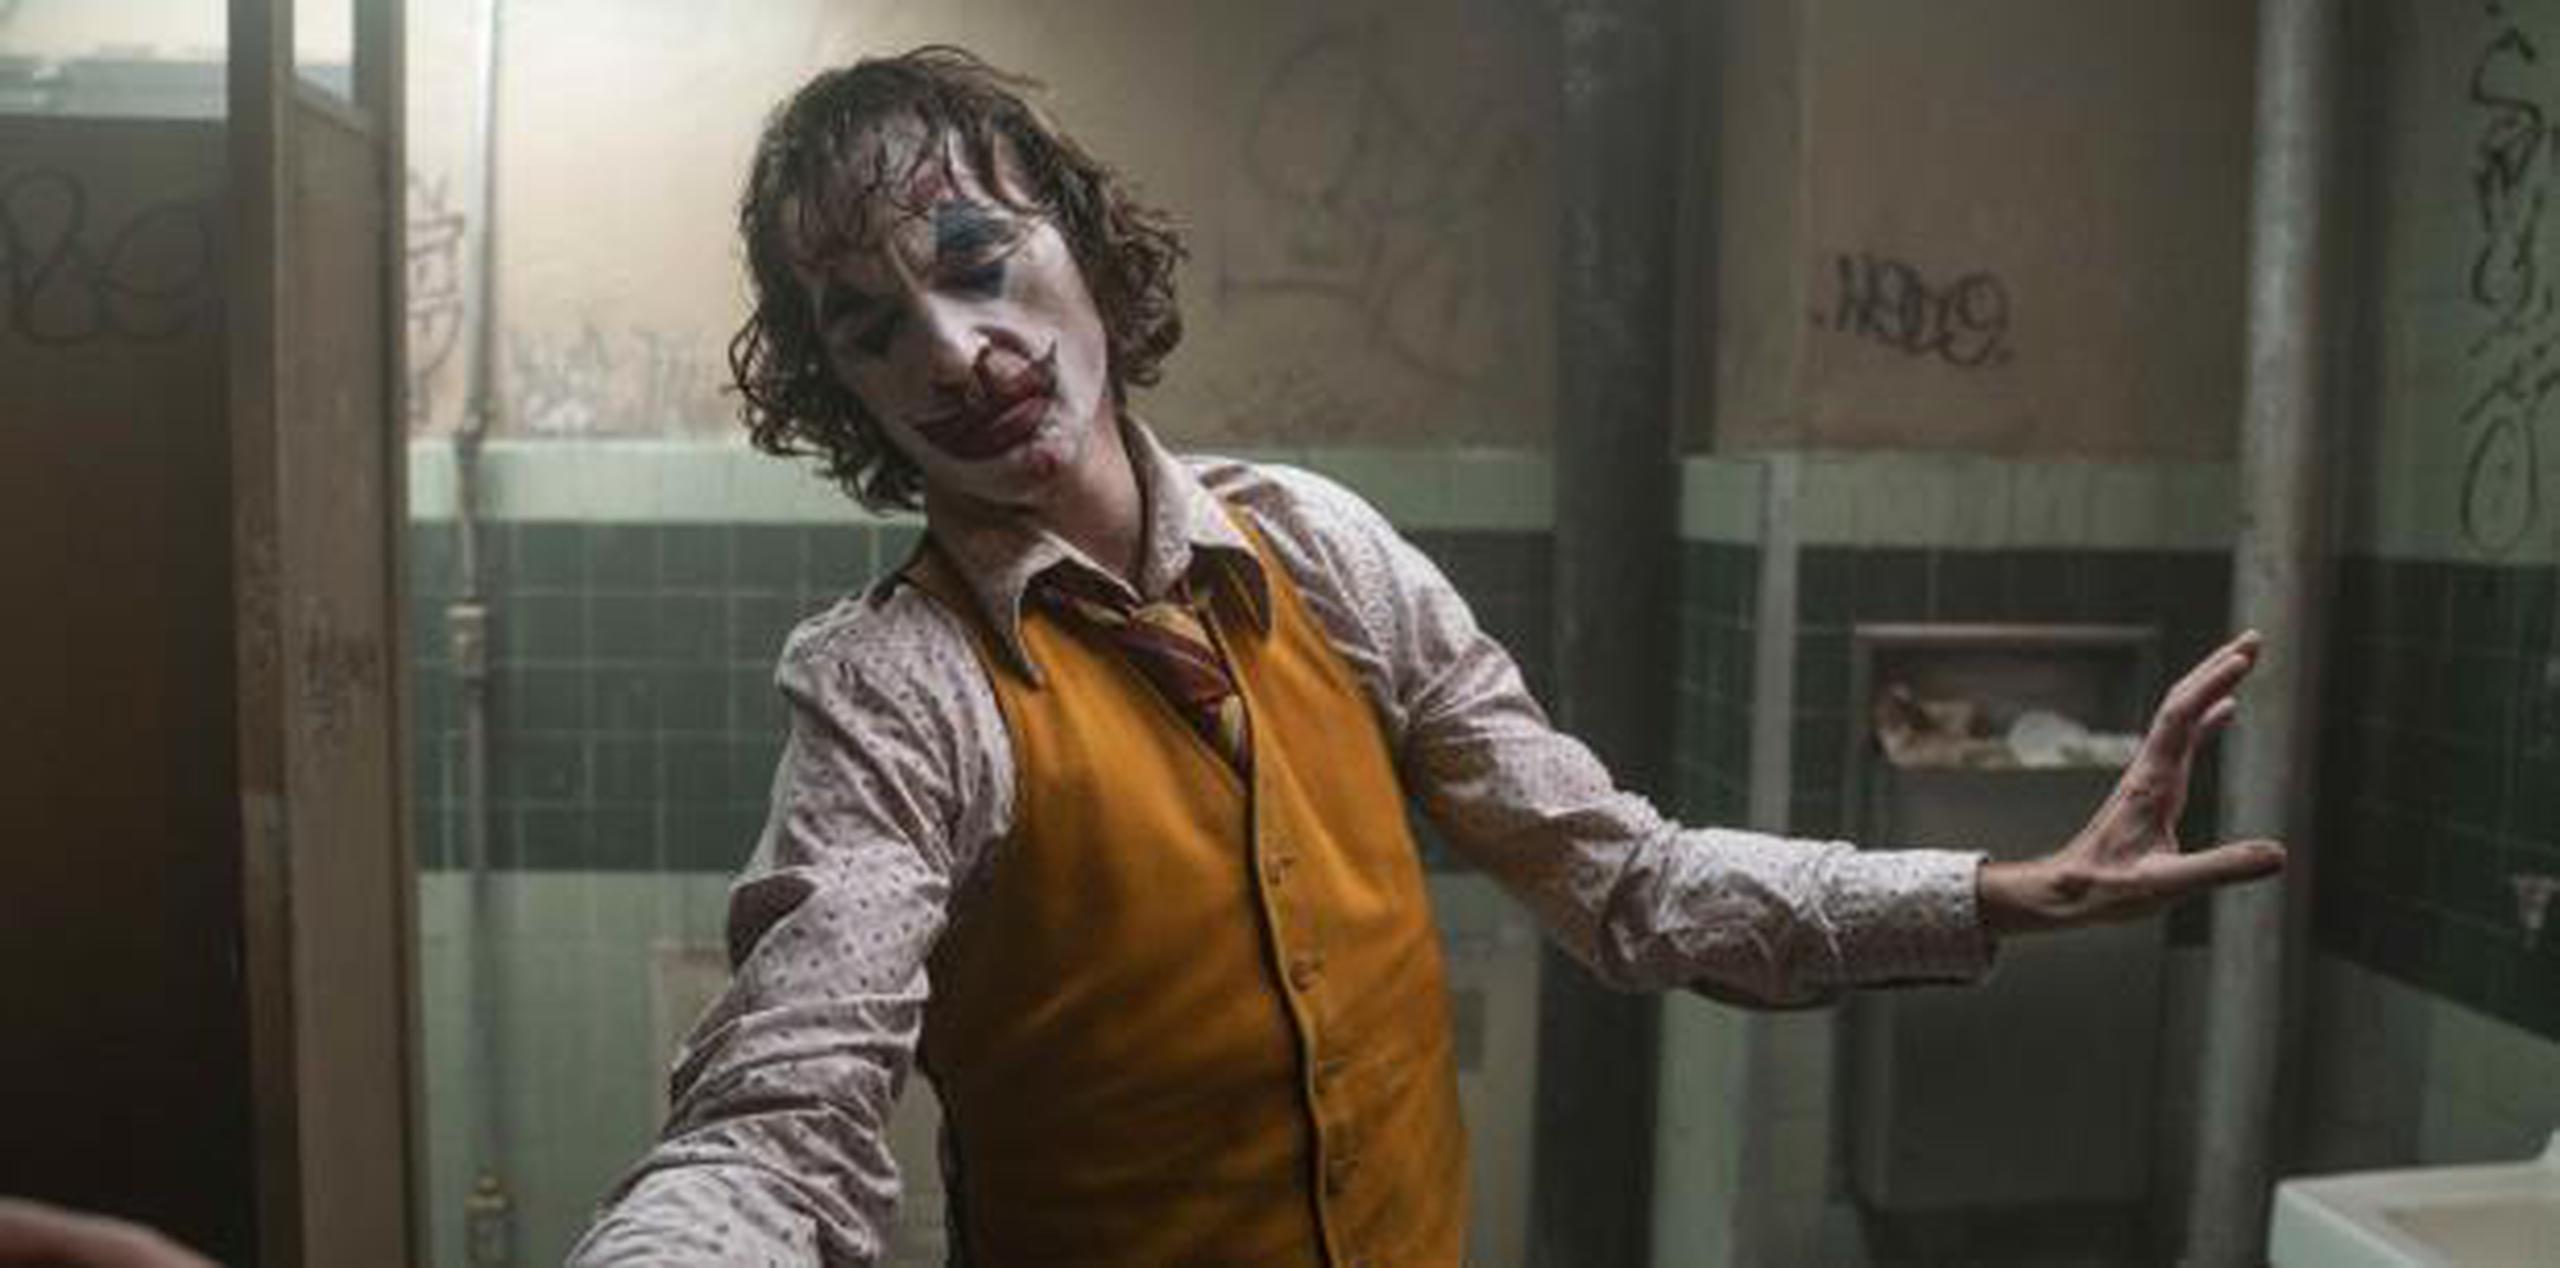 “Joker”, bajo la dirección de Todd Phillips, se convirtió recientemente en la cinta para adultos más exitosa de la historia, sin contar la inflación. Ha recaudado $849 millones a nivel internacional. (archivo)

